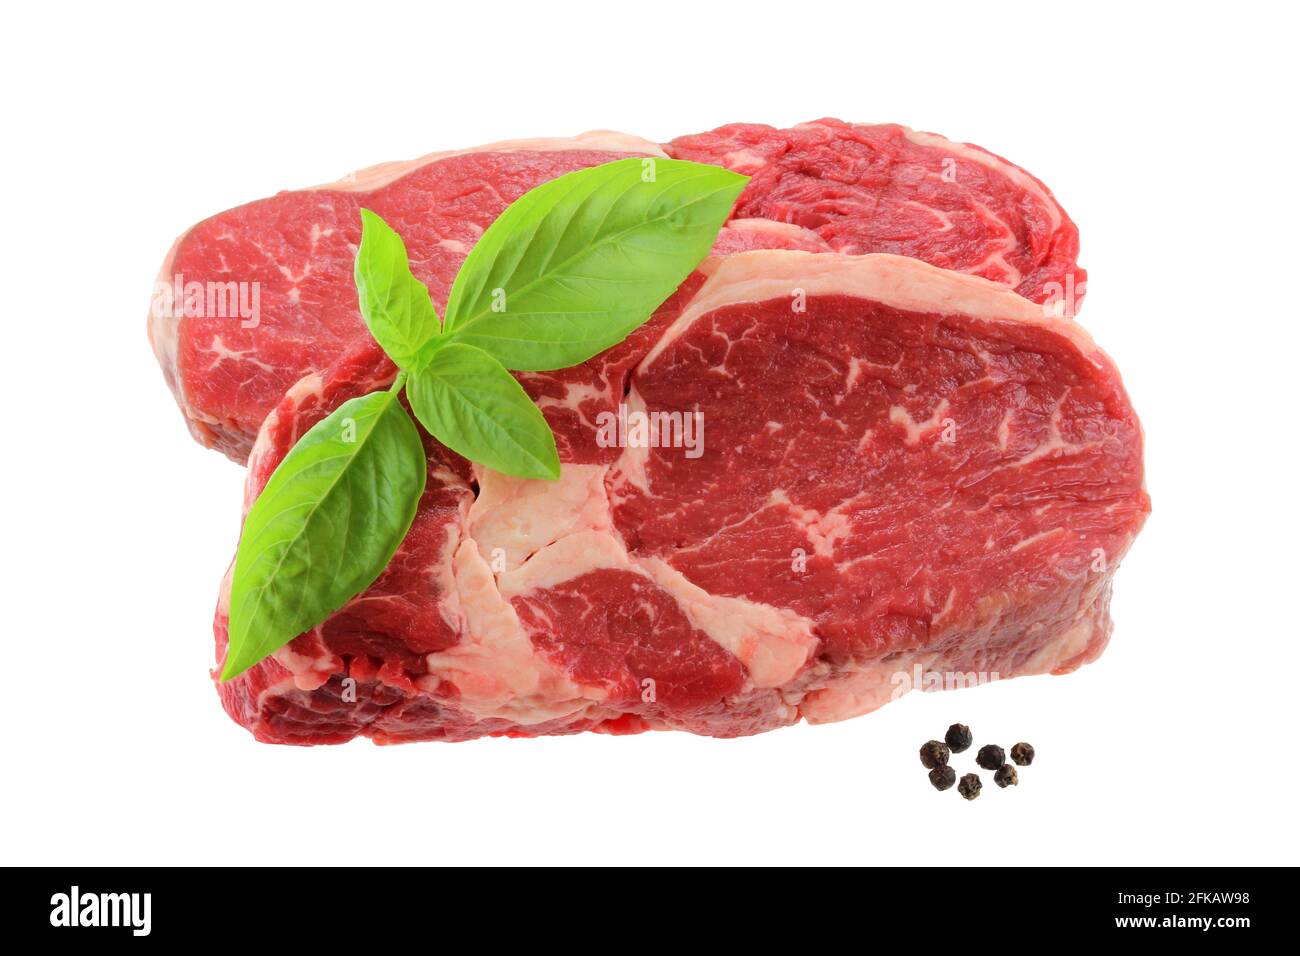 Un taglio di carne dalla parte posteriore : bistecca di Sirloin fresca, isolata su sfondo bianco Foto Stock